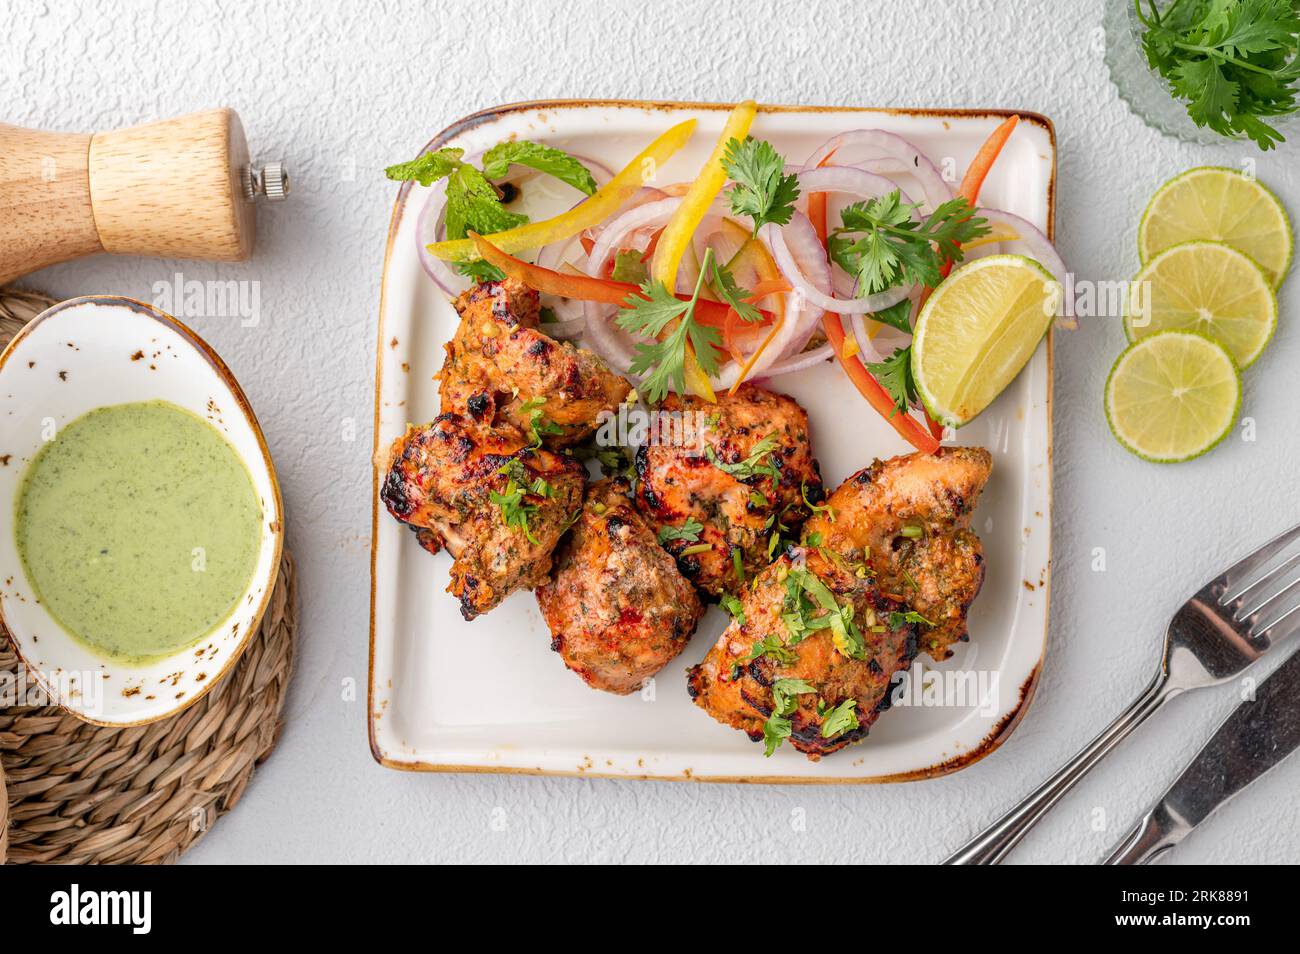 Une assiette de cuisine indienne avec du poulet tandoori, garnie d'oignons parfumés et servie avec un accompagnement de légumes Banque D'Images